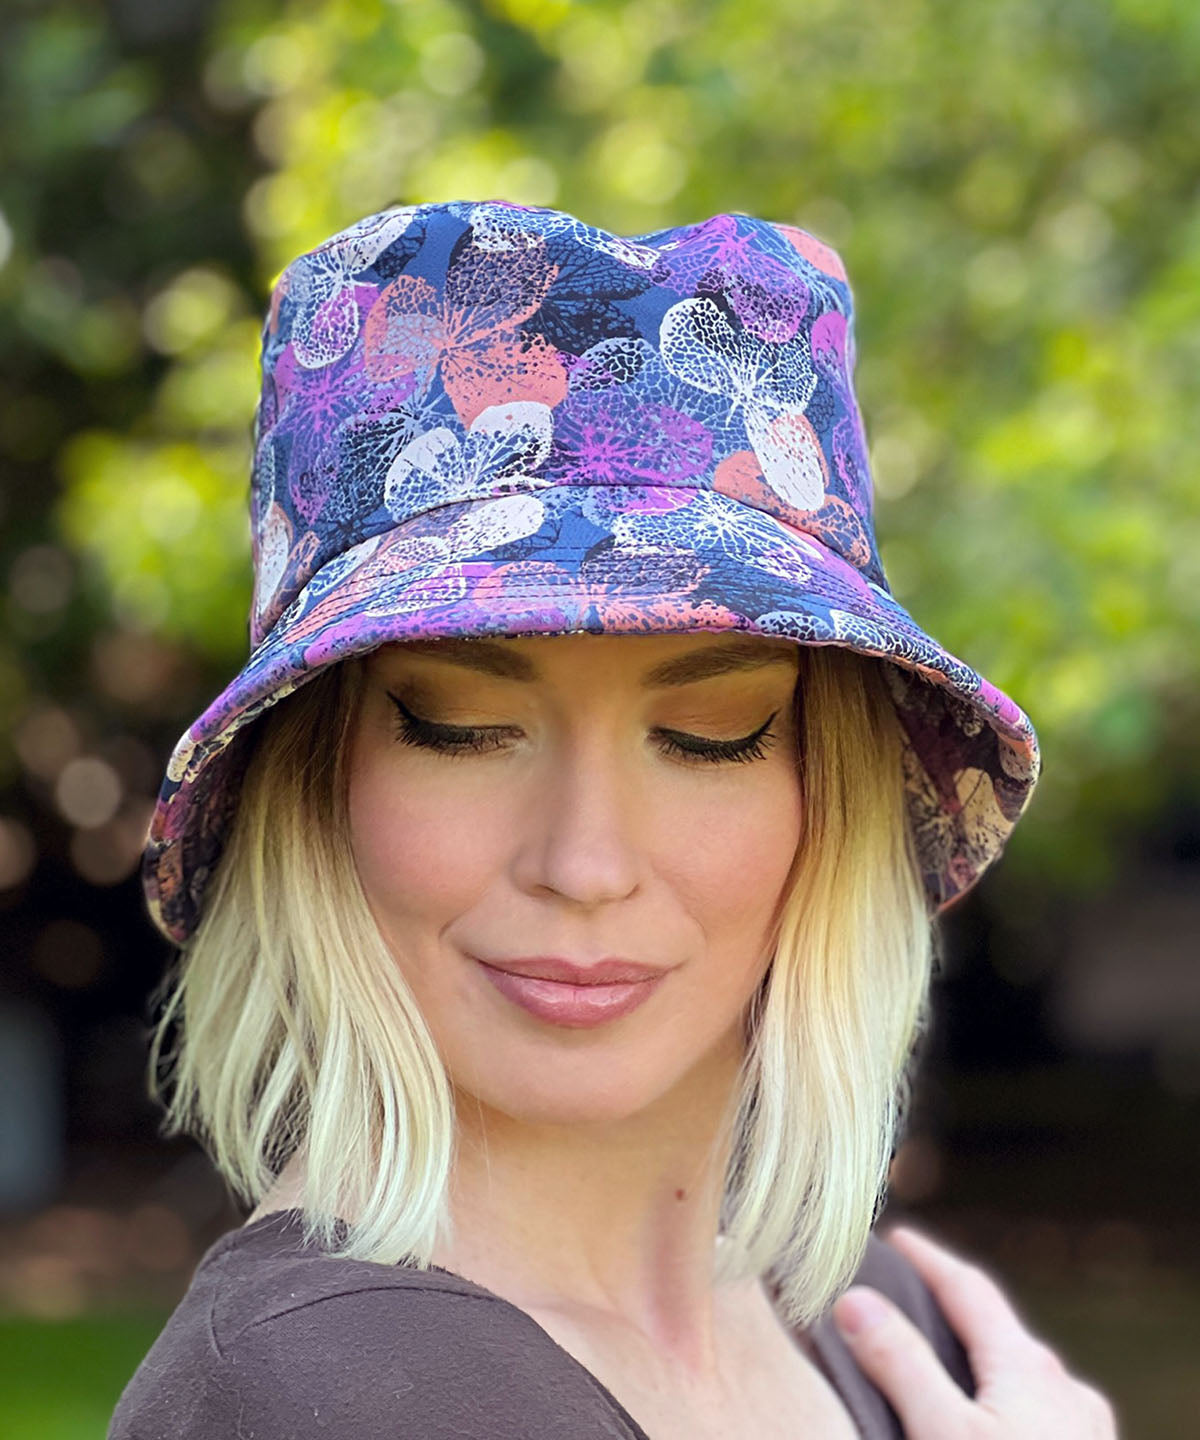 Hollie Sun Hat in Paper Flowers in Lavender. Handmade in America by Pandemonium Seattle.